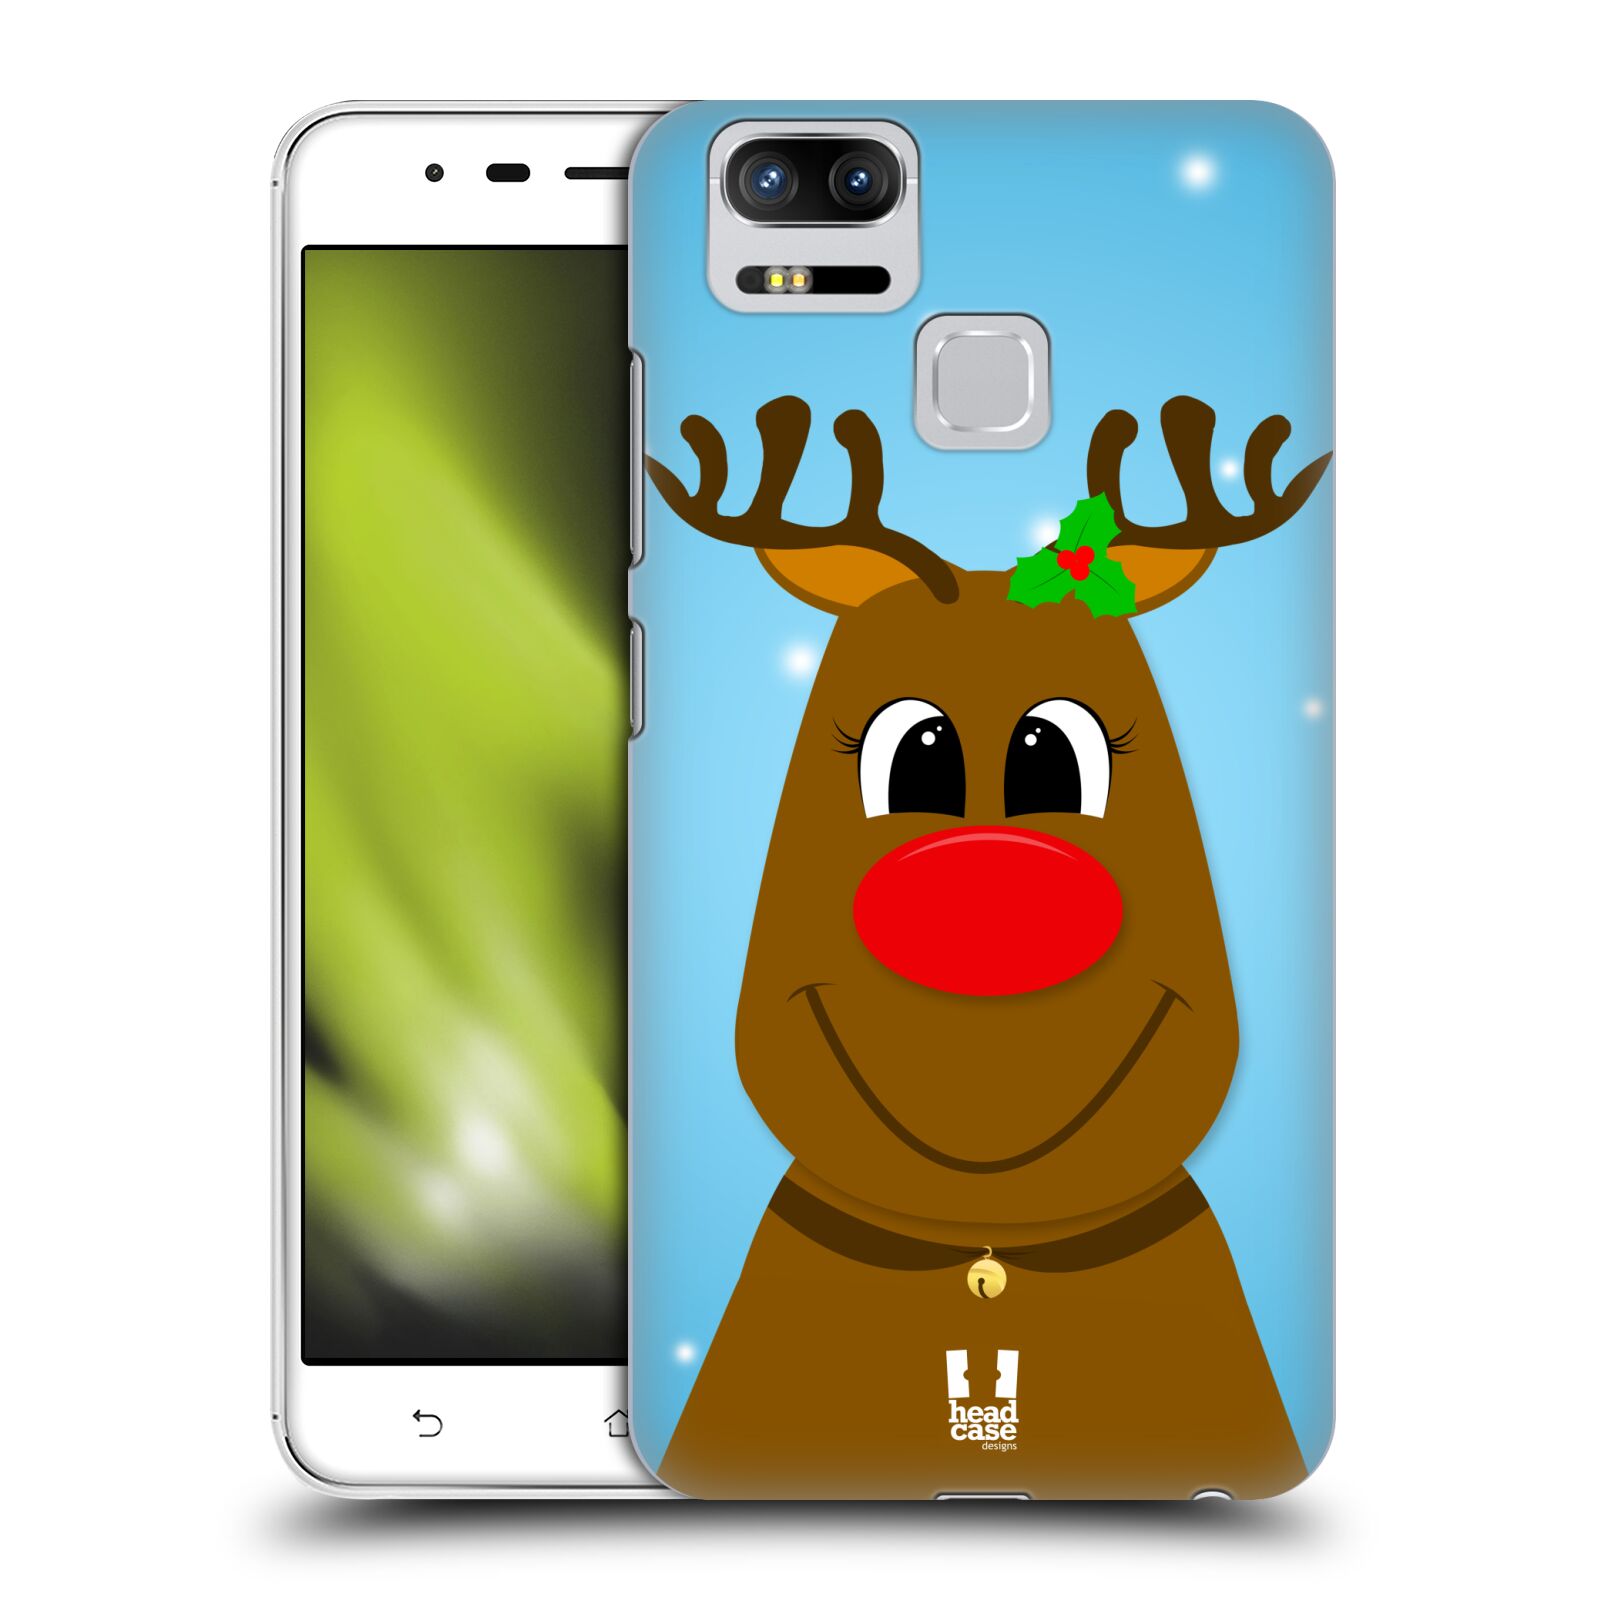 HEAD CASE plastový obal na mobil Asus Zenfone 3 Zoom ZE553KL vzor Vánoční tváře kreslené SOB RUDOLF